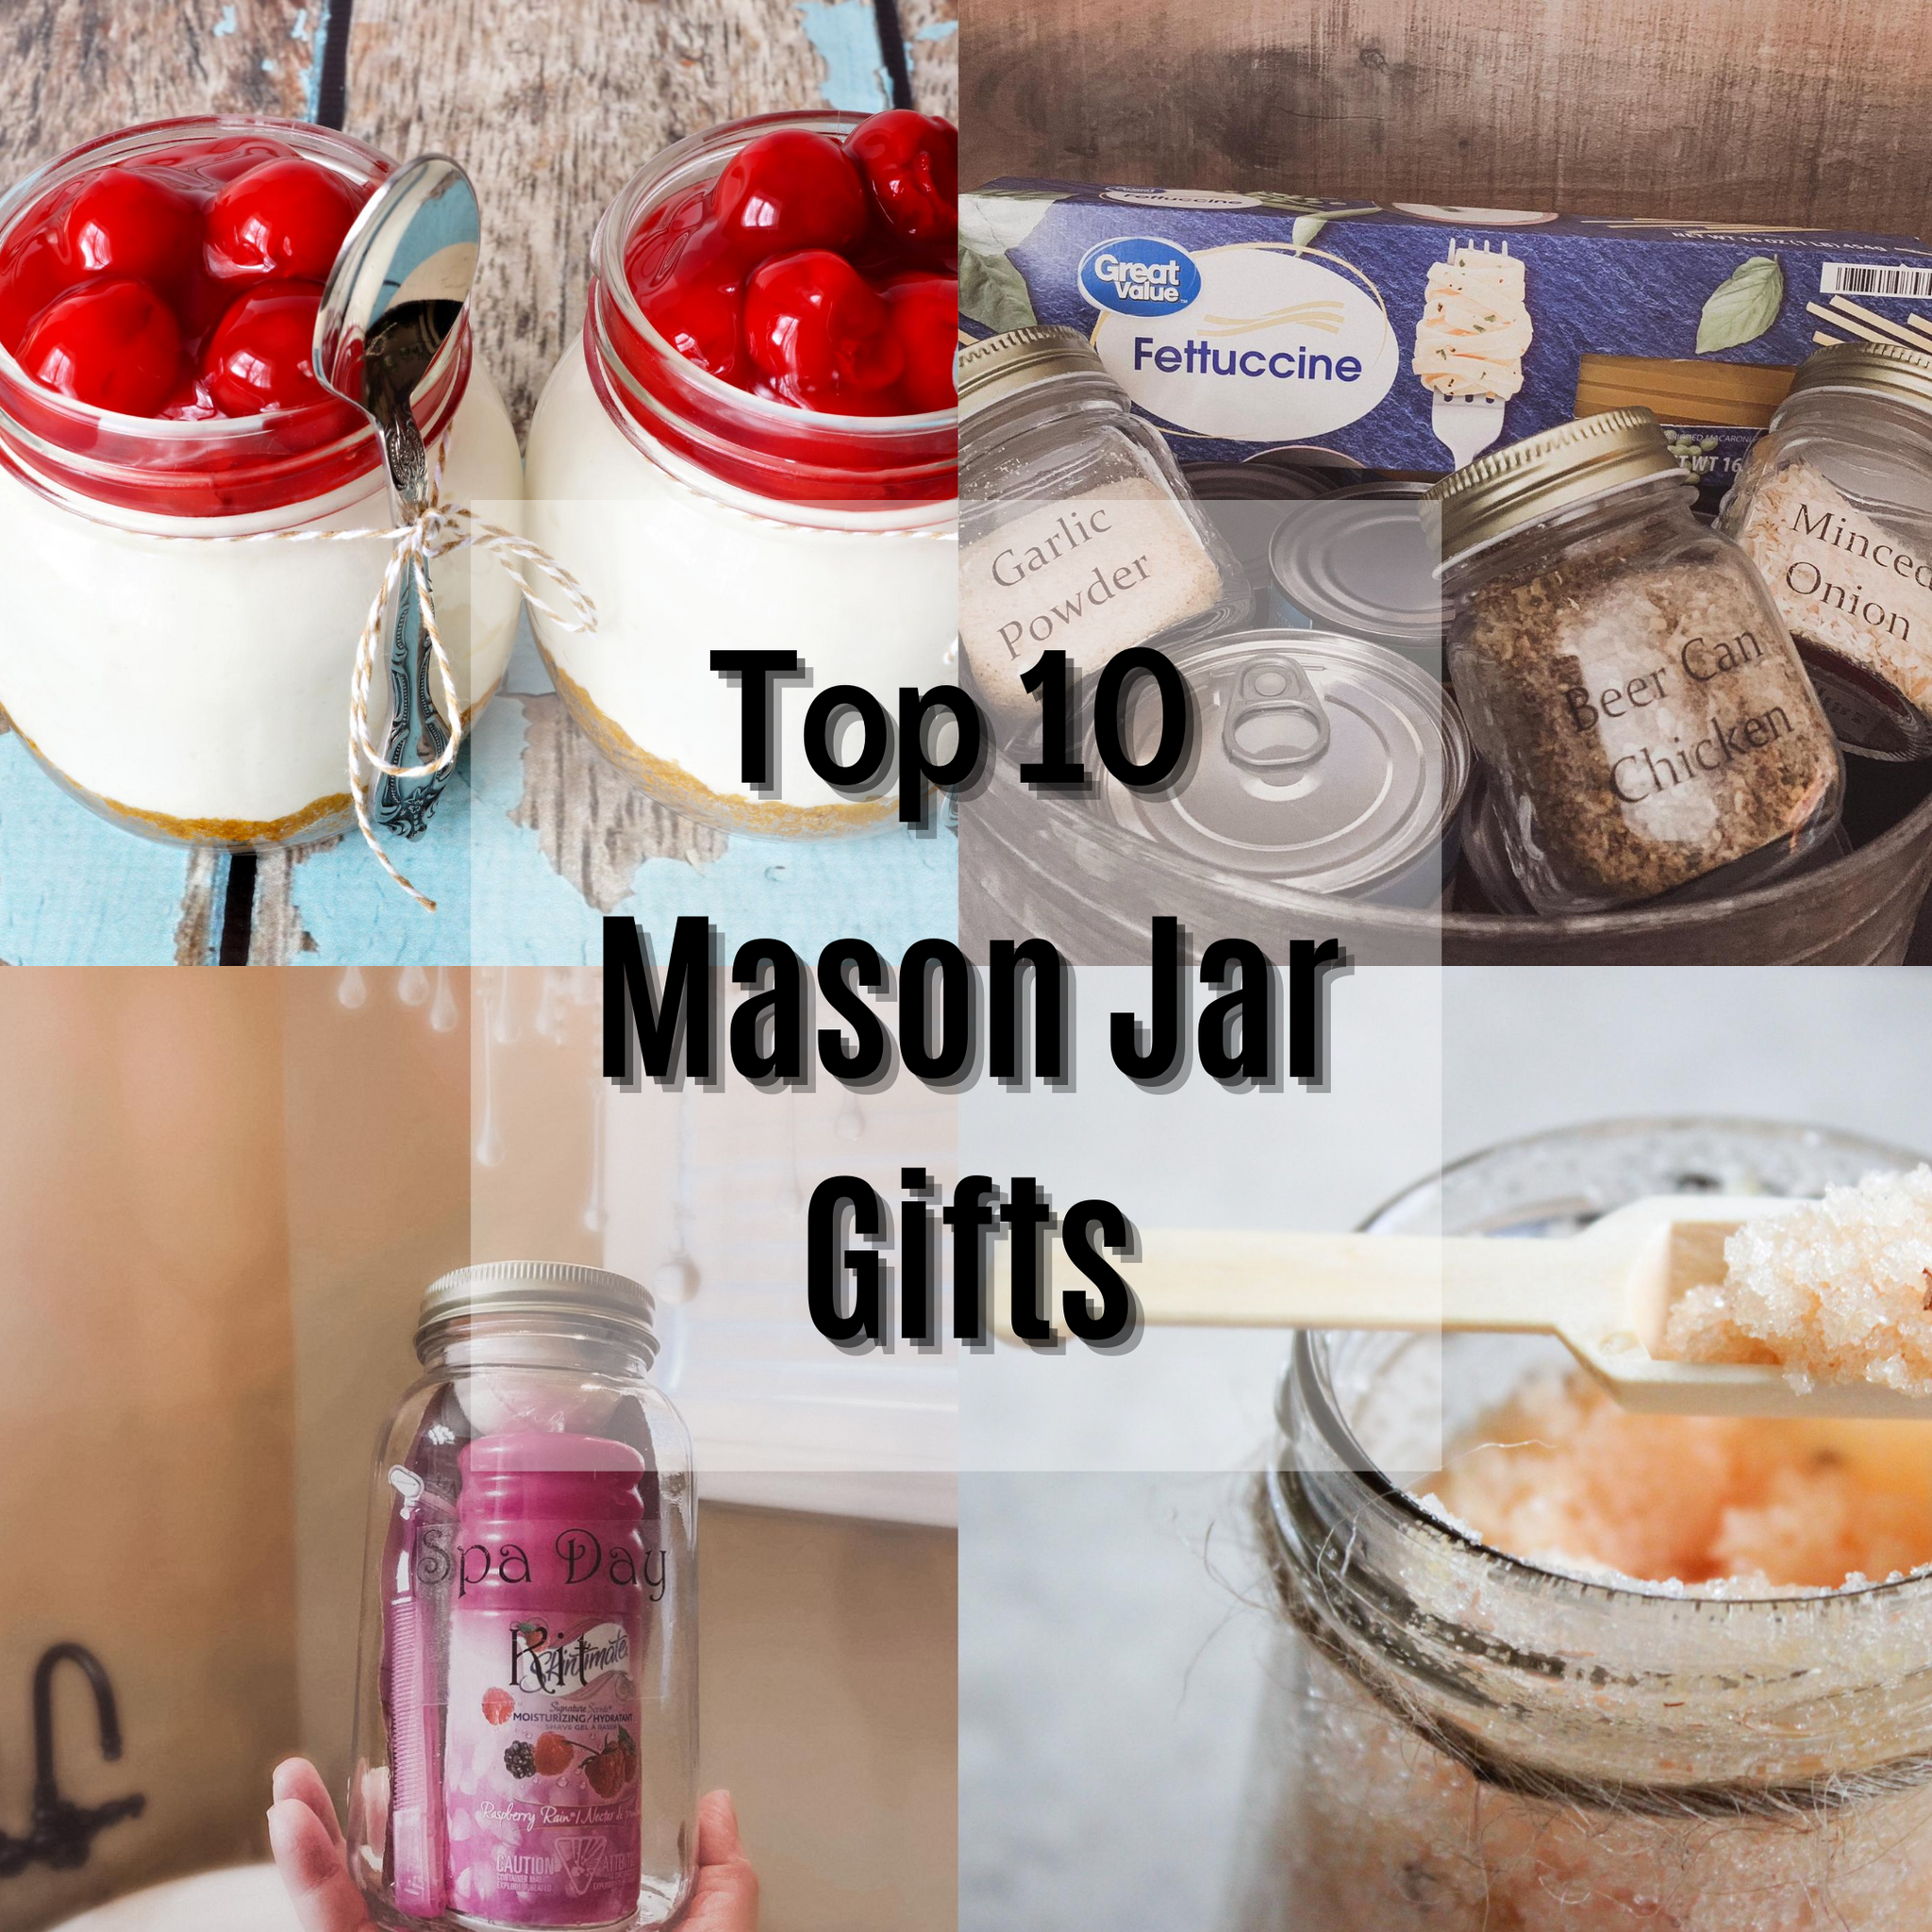 Top 10 Mason Jar Gifts